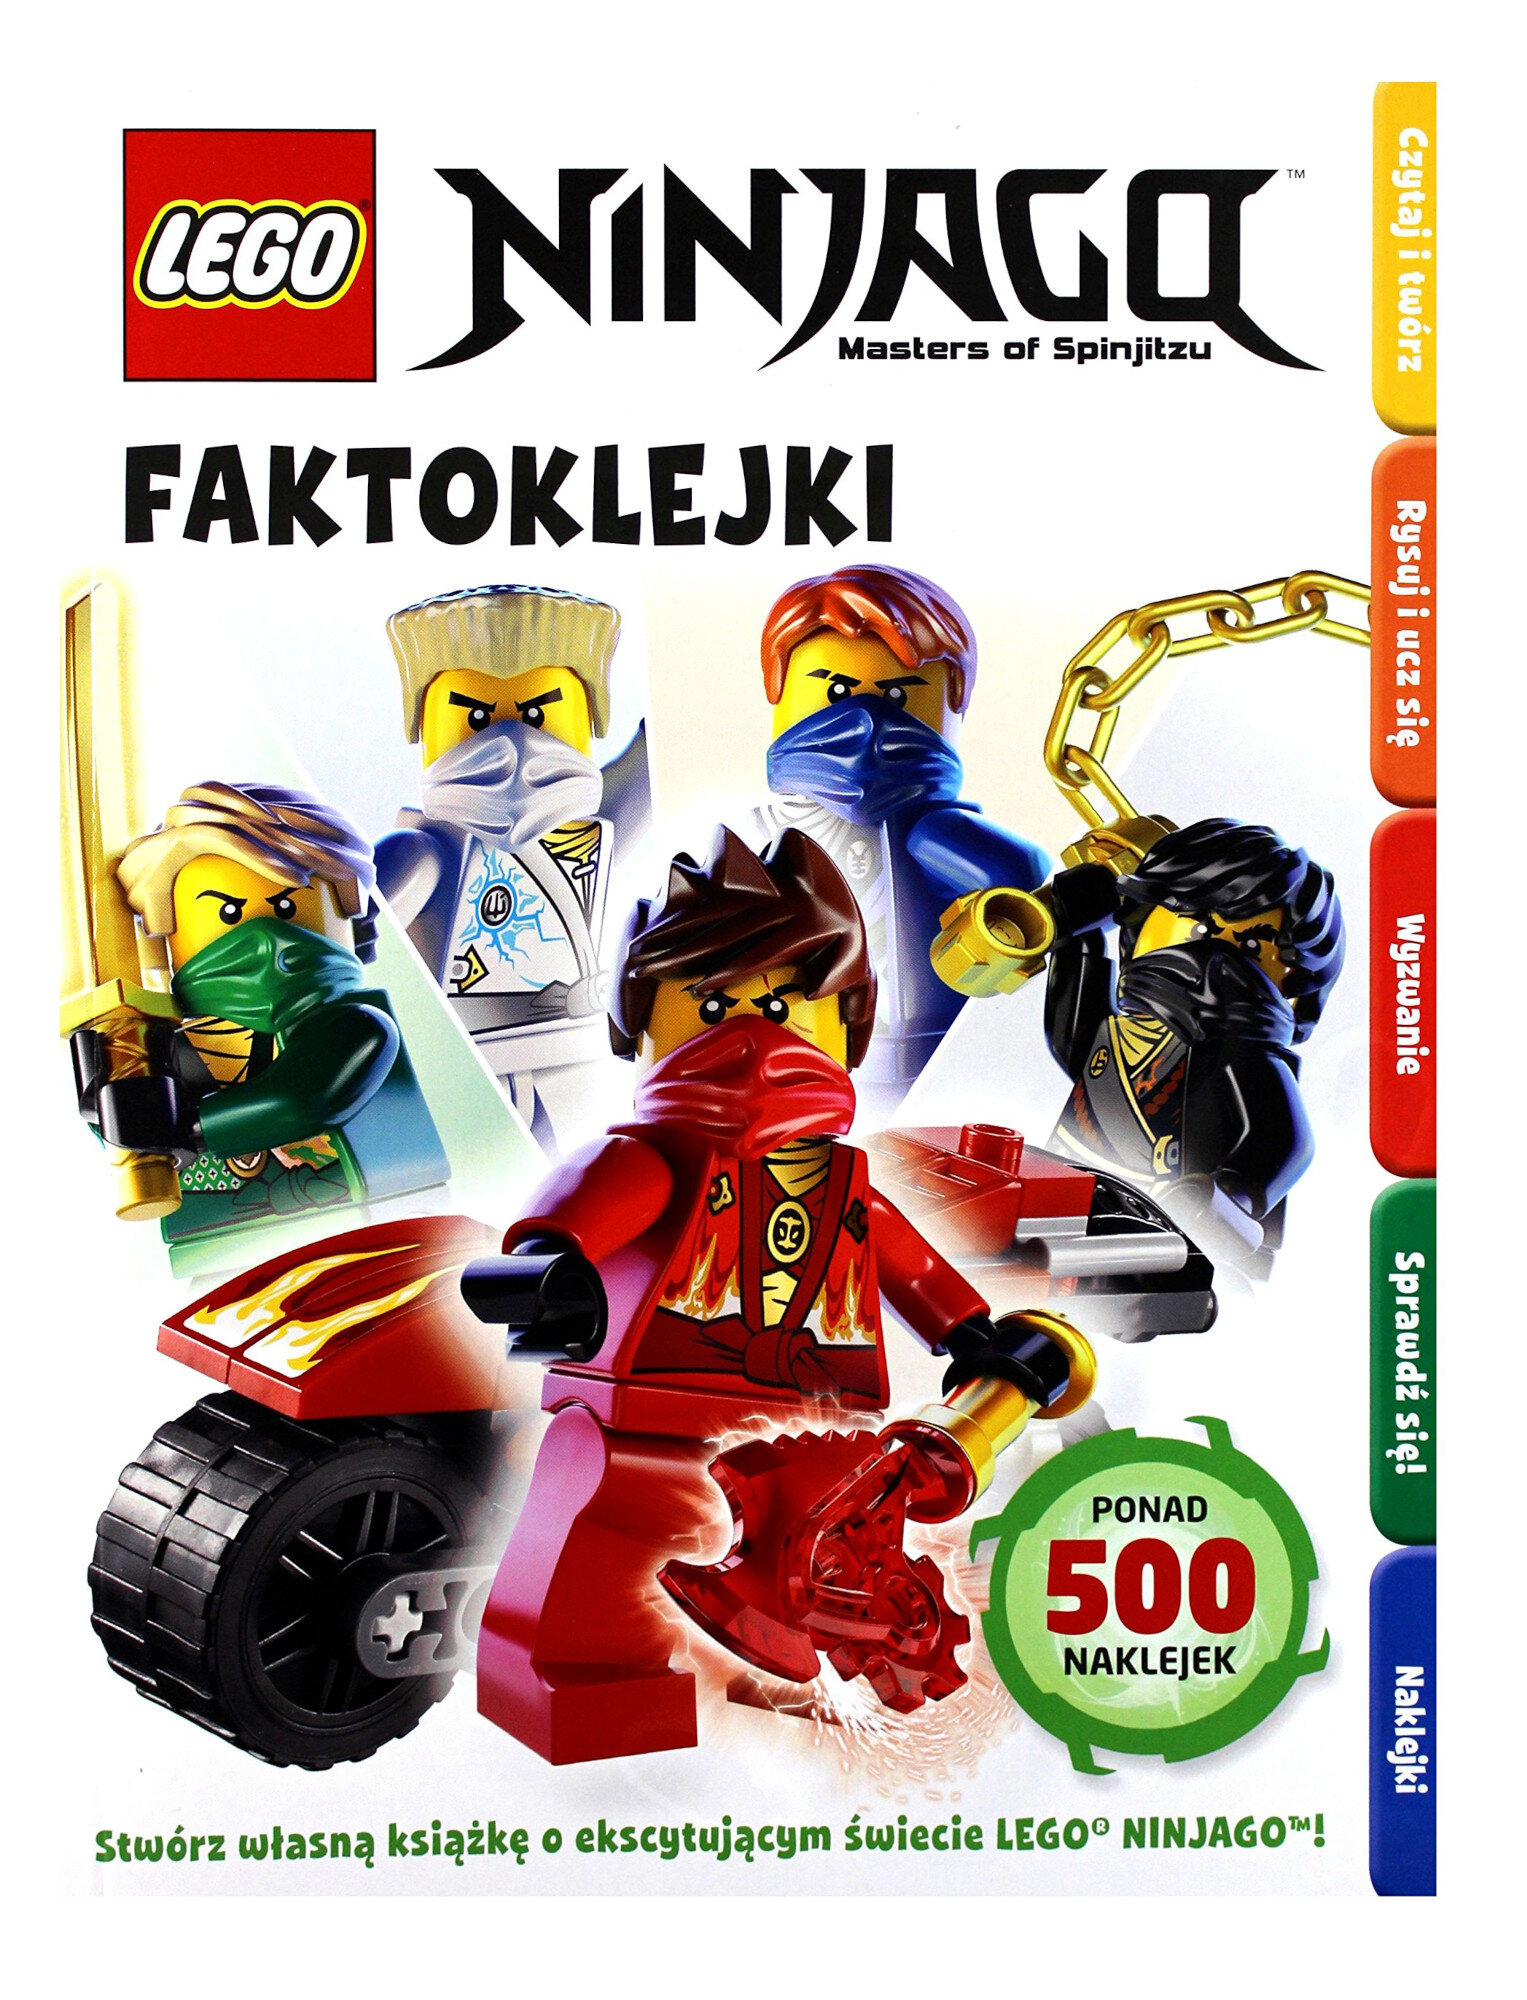 LEGO Ninjago Faktoklejki LDF-2 Książka - niskie ceny i opinie w Media Expert